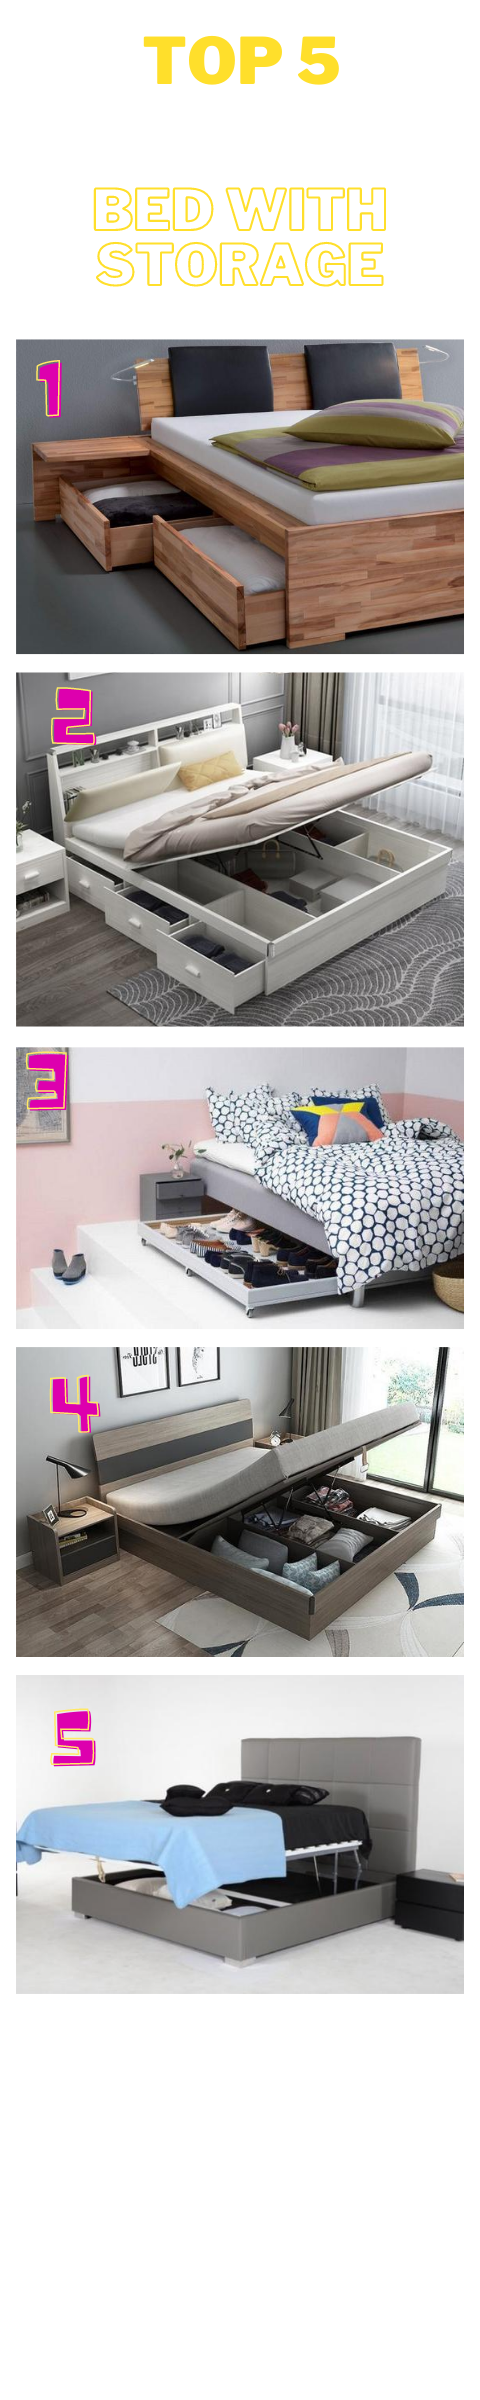 5 Bed Design with Storage Underneath Ideas 2020